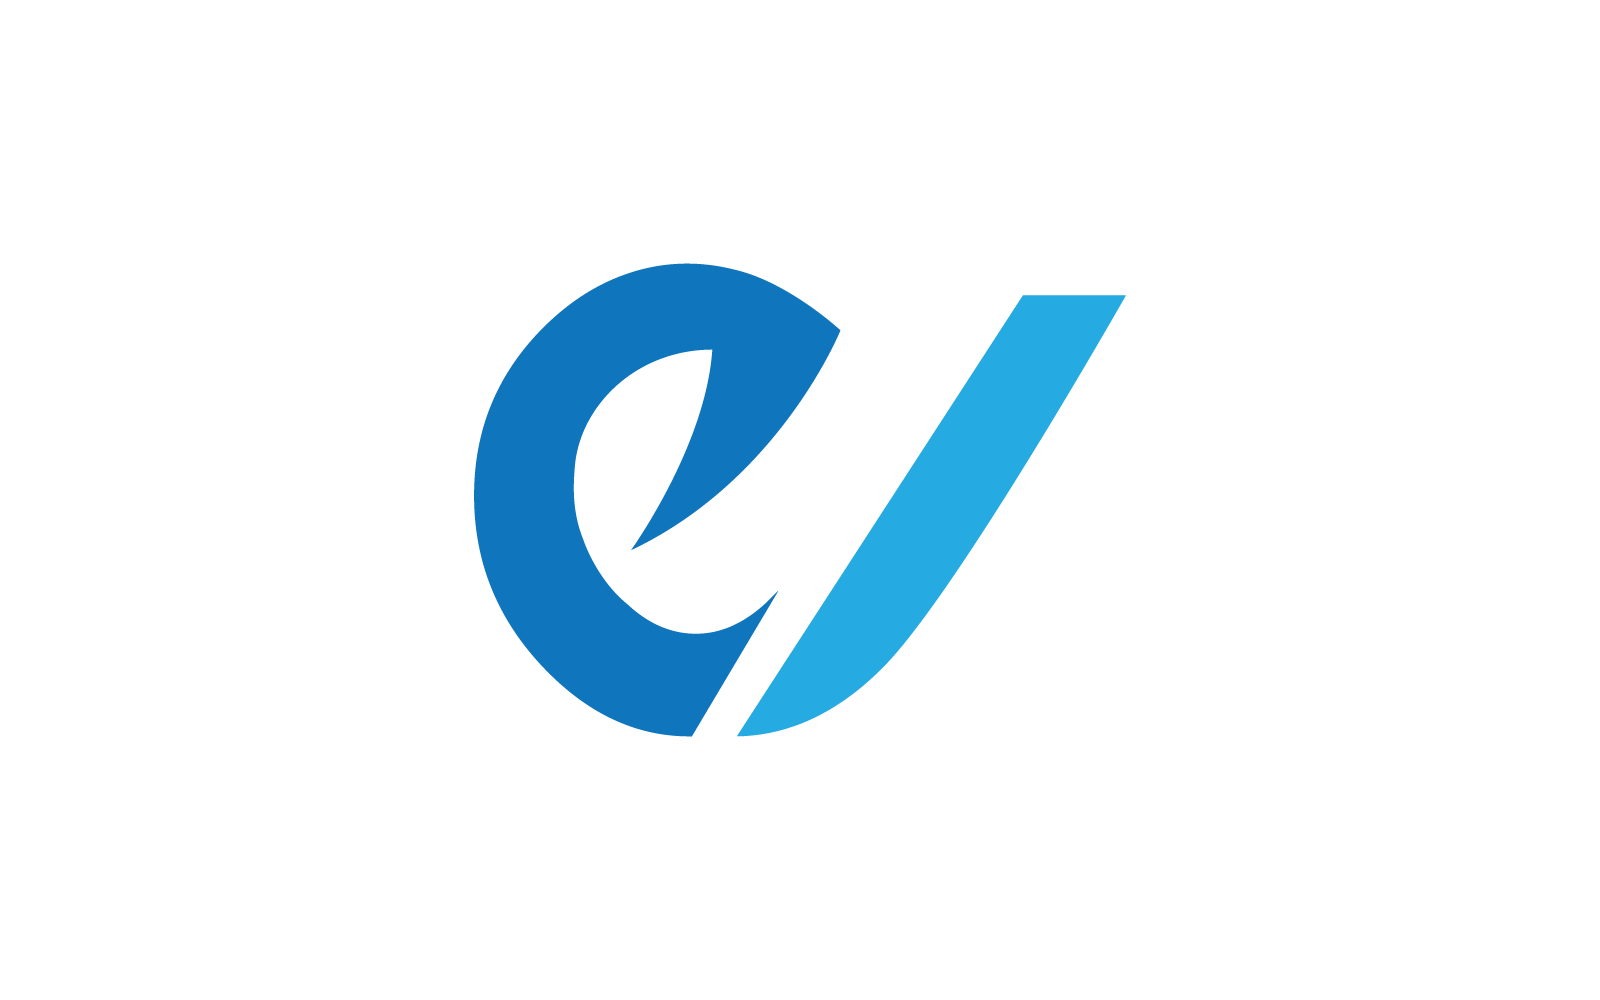 Modern E İlk harfi, harf, alfabe yazı tipi logo vektör tasarımı